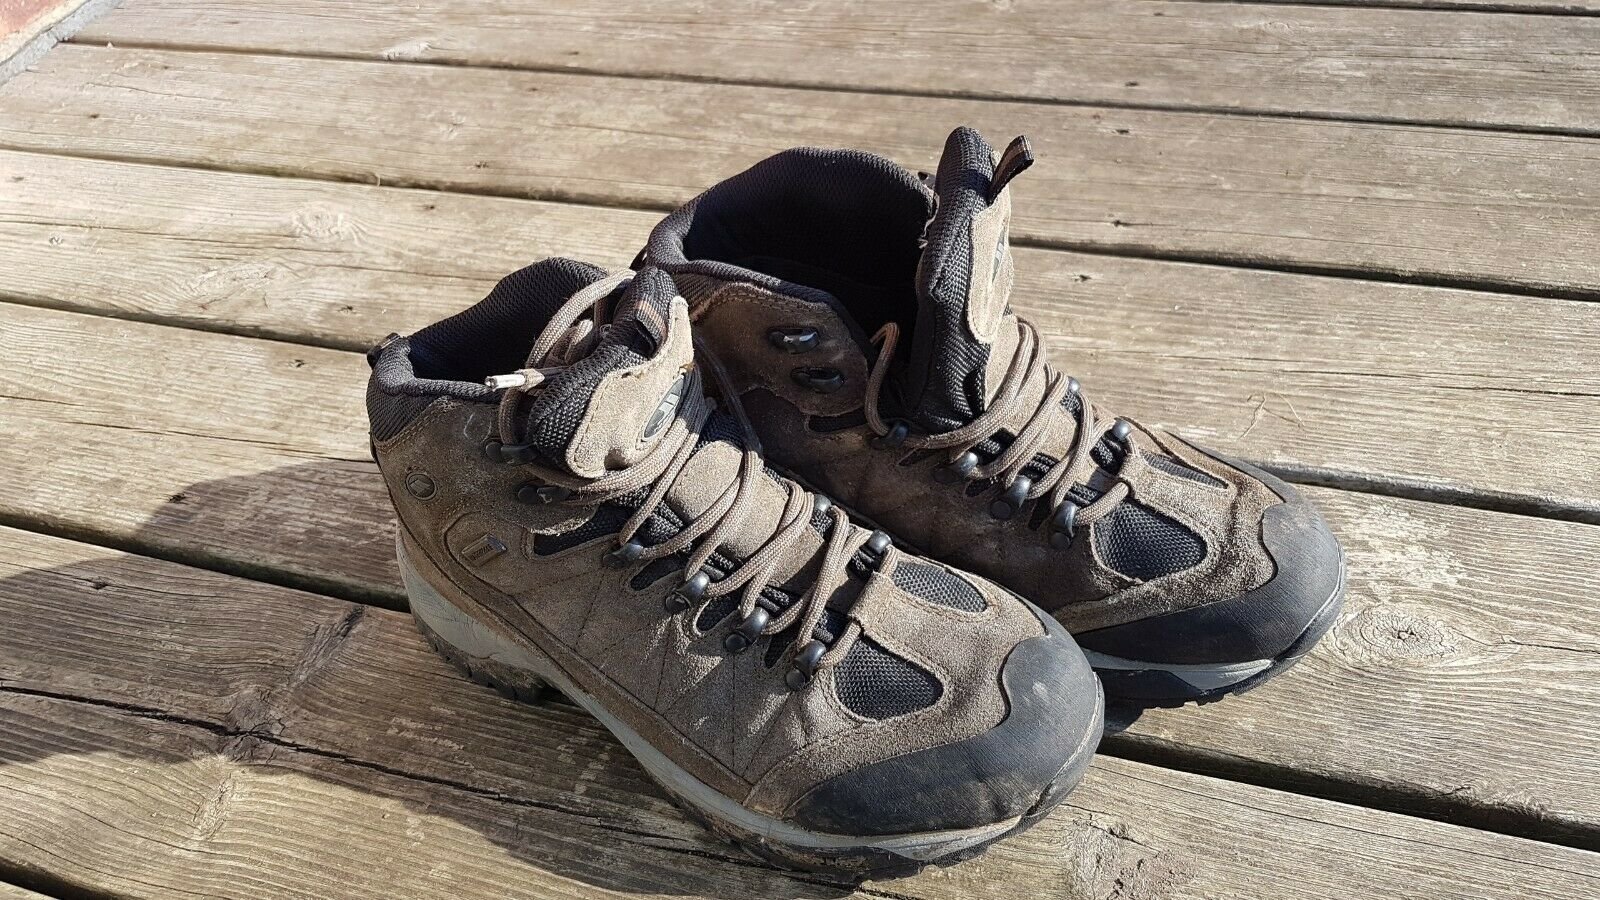 Trespass Gerlach walking / hiking boots